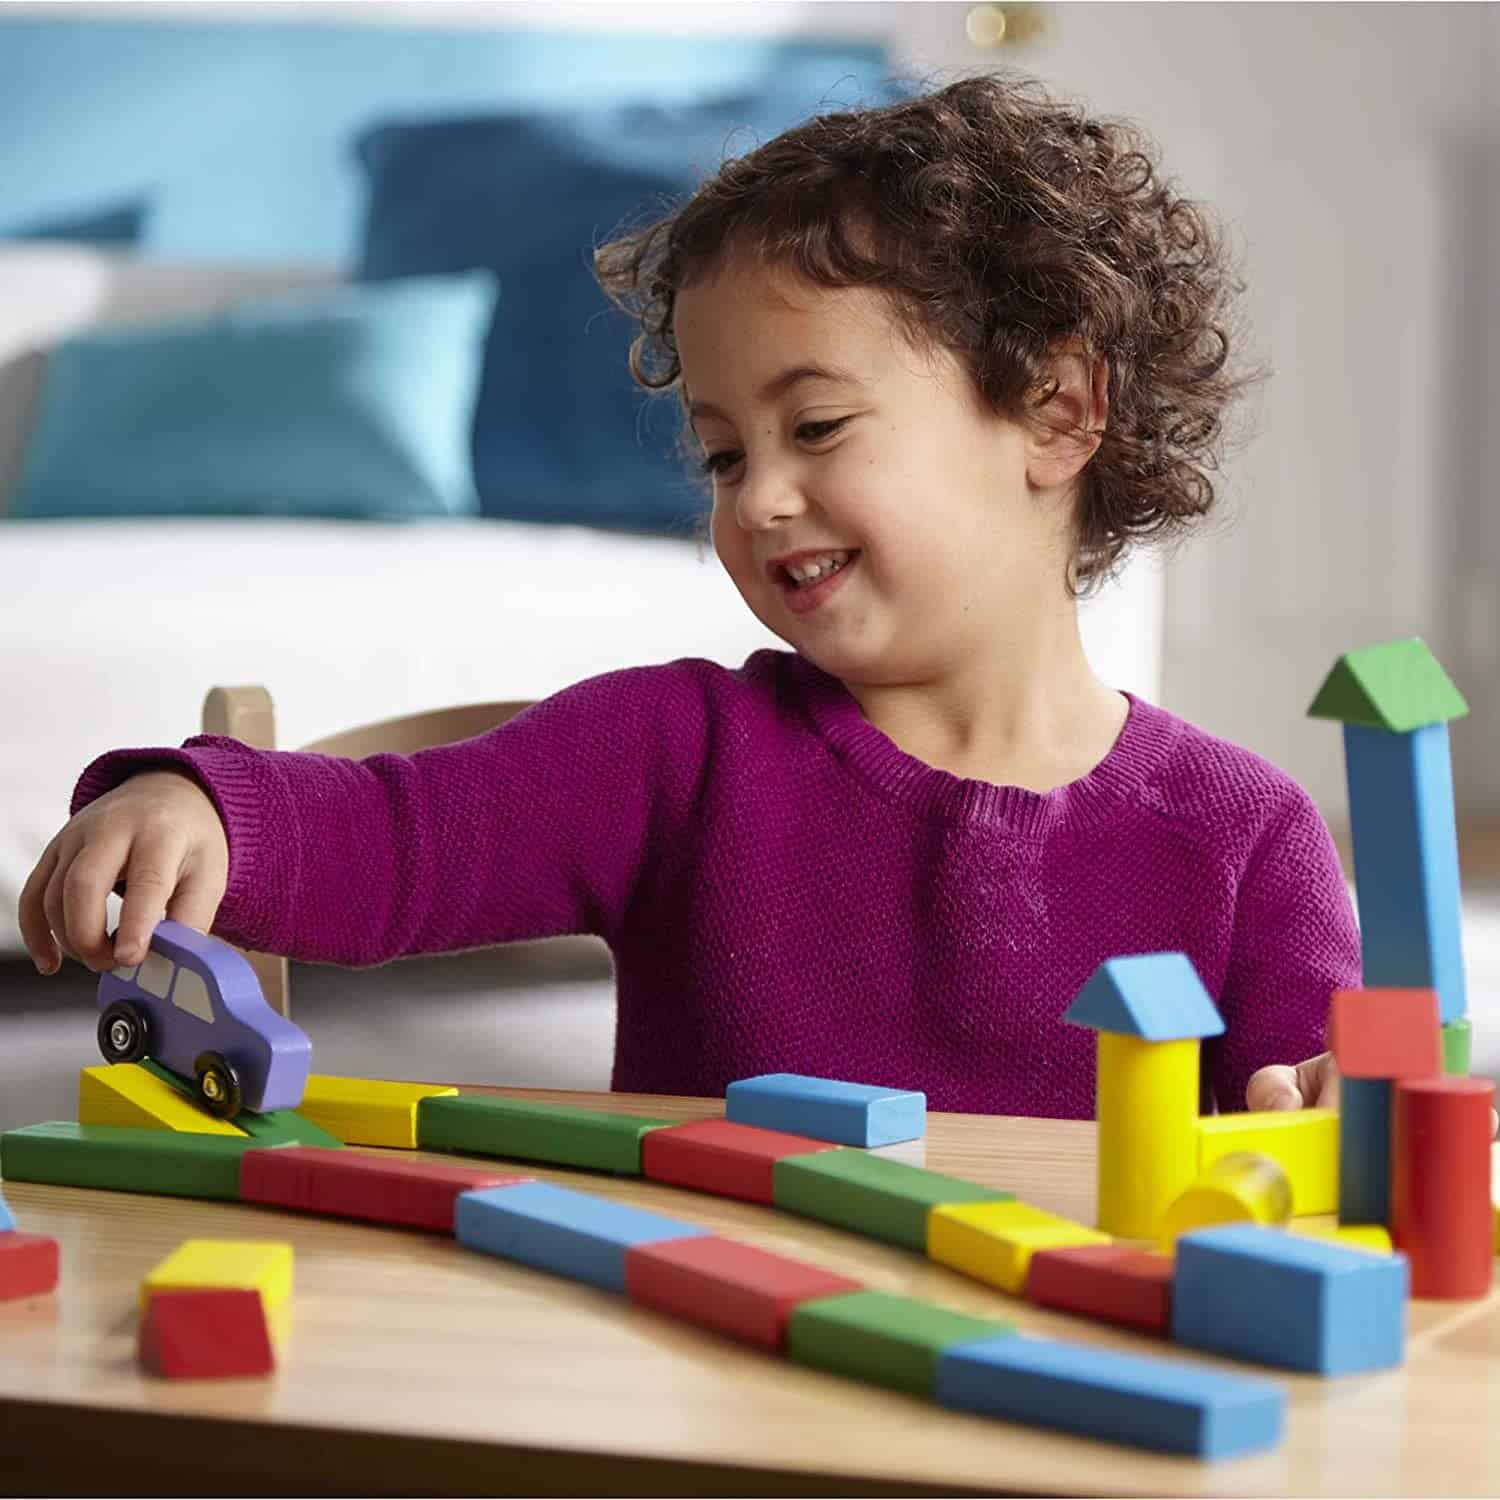 Los juguetes de construcción más lindos: caja de bloques de madera de colores Melissa & Doug